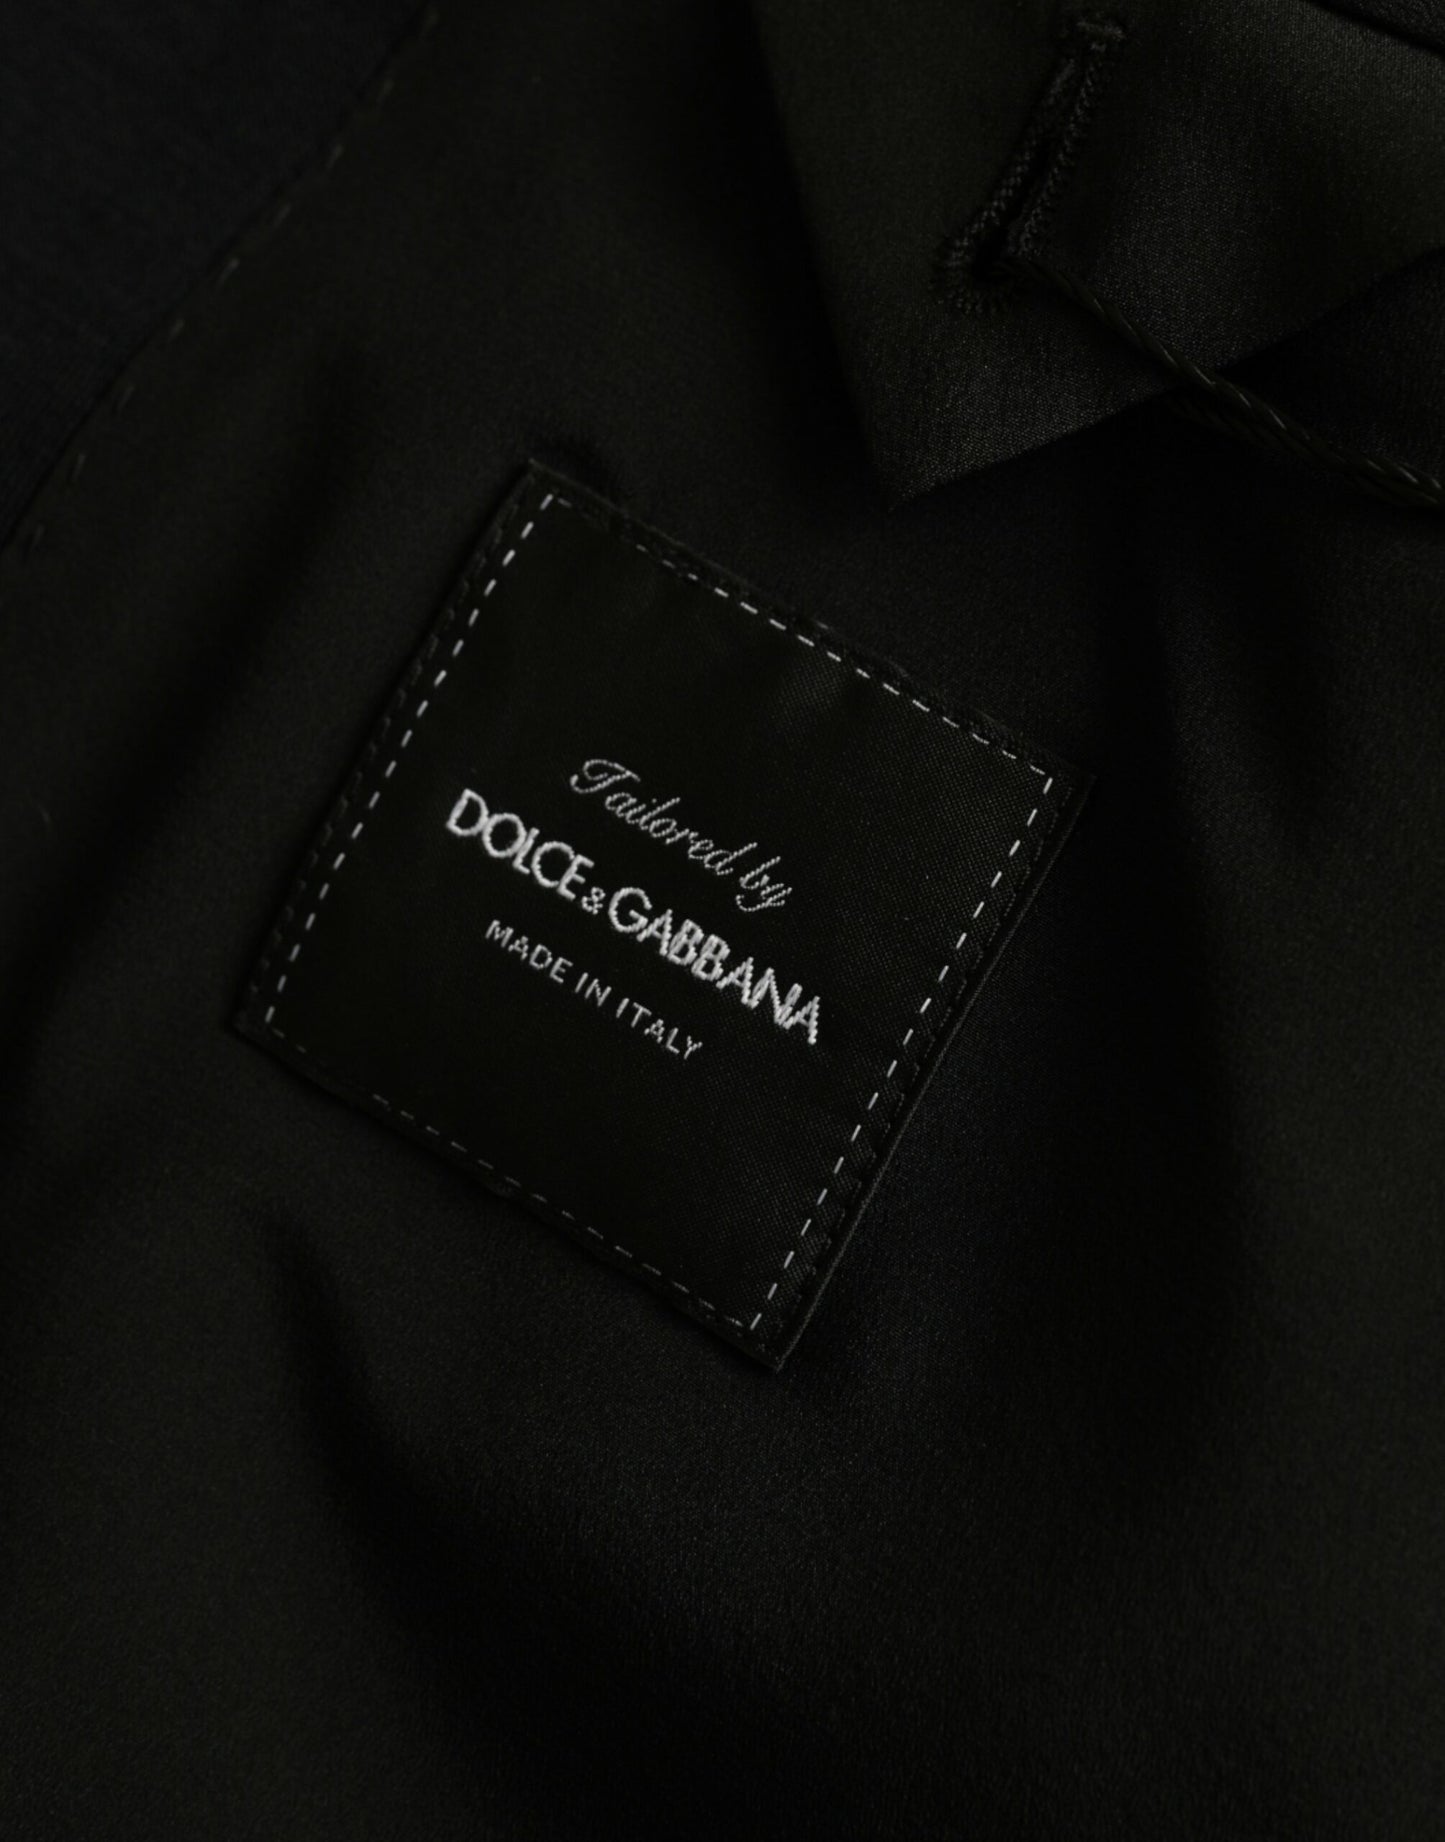 Black Wool Notch Single Breasted Coat Blazer